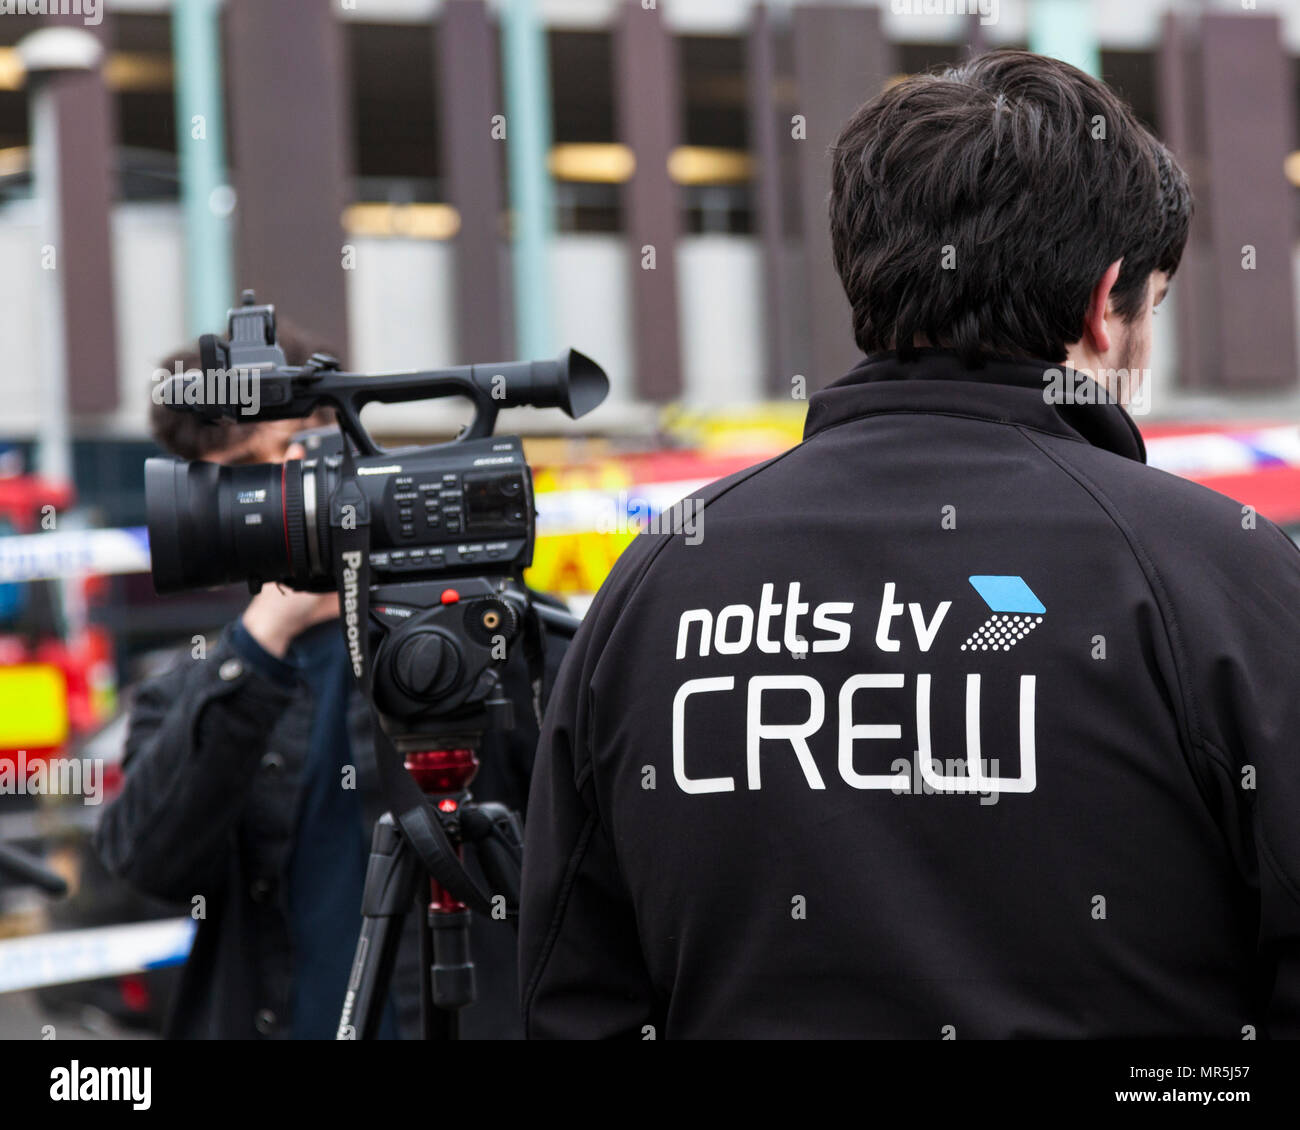 Notts TV crew, Nottingham, England, UK Stock Photo